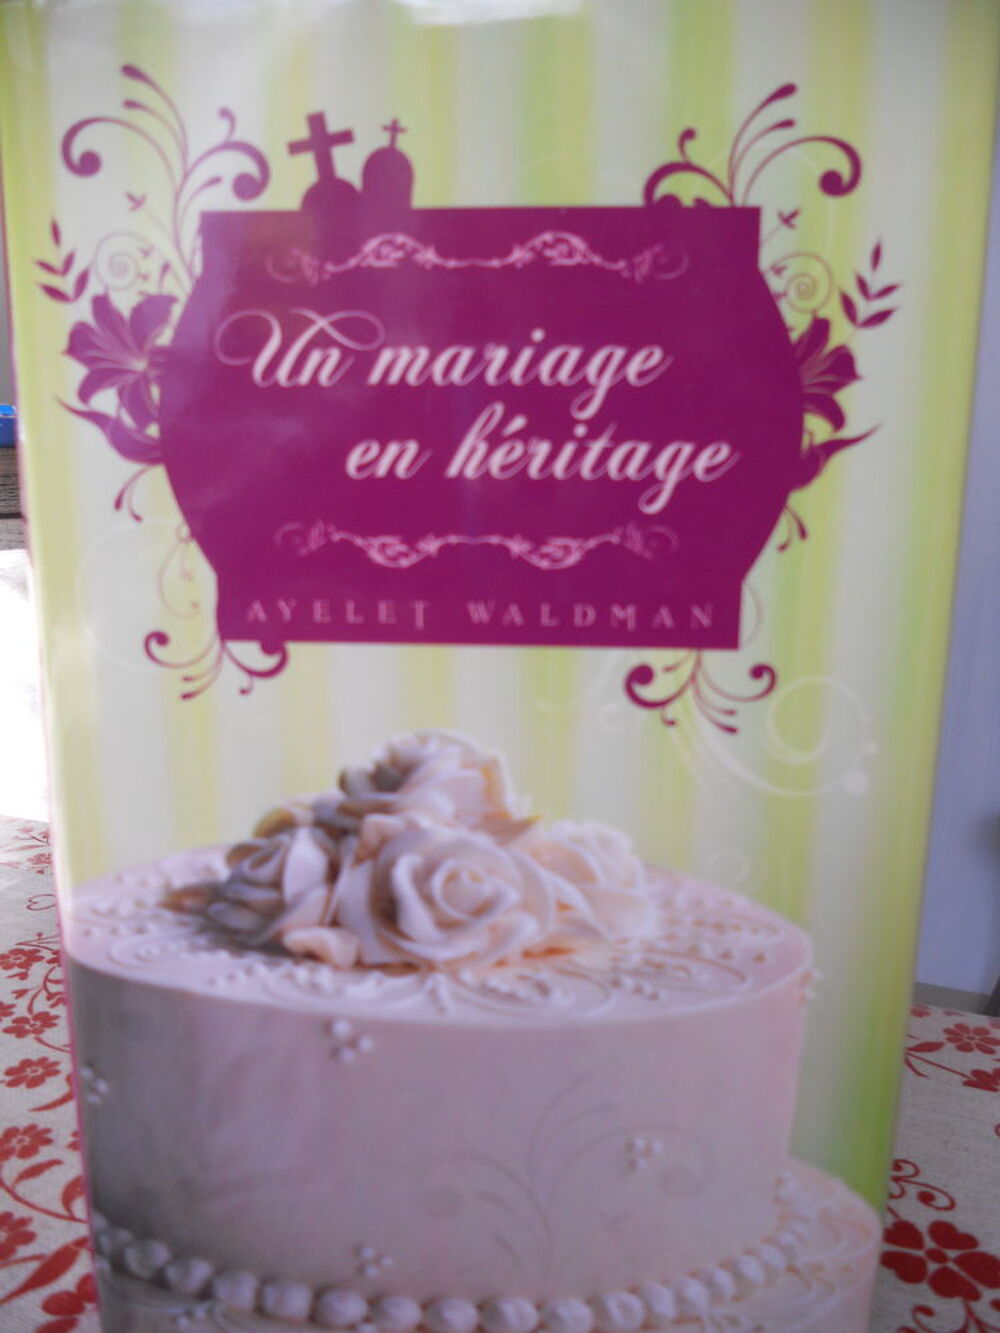 Un mariage en h&eacute;ritage - Ayelet - WALDMAN Livres et BD